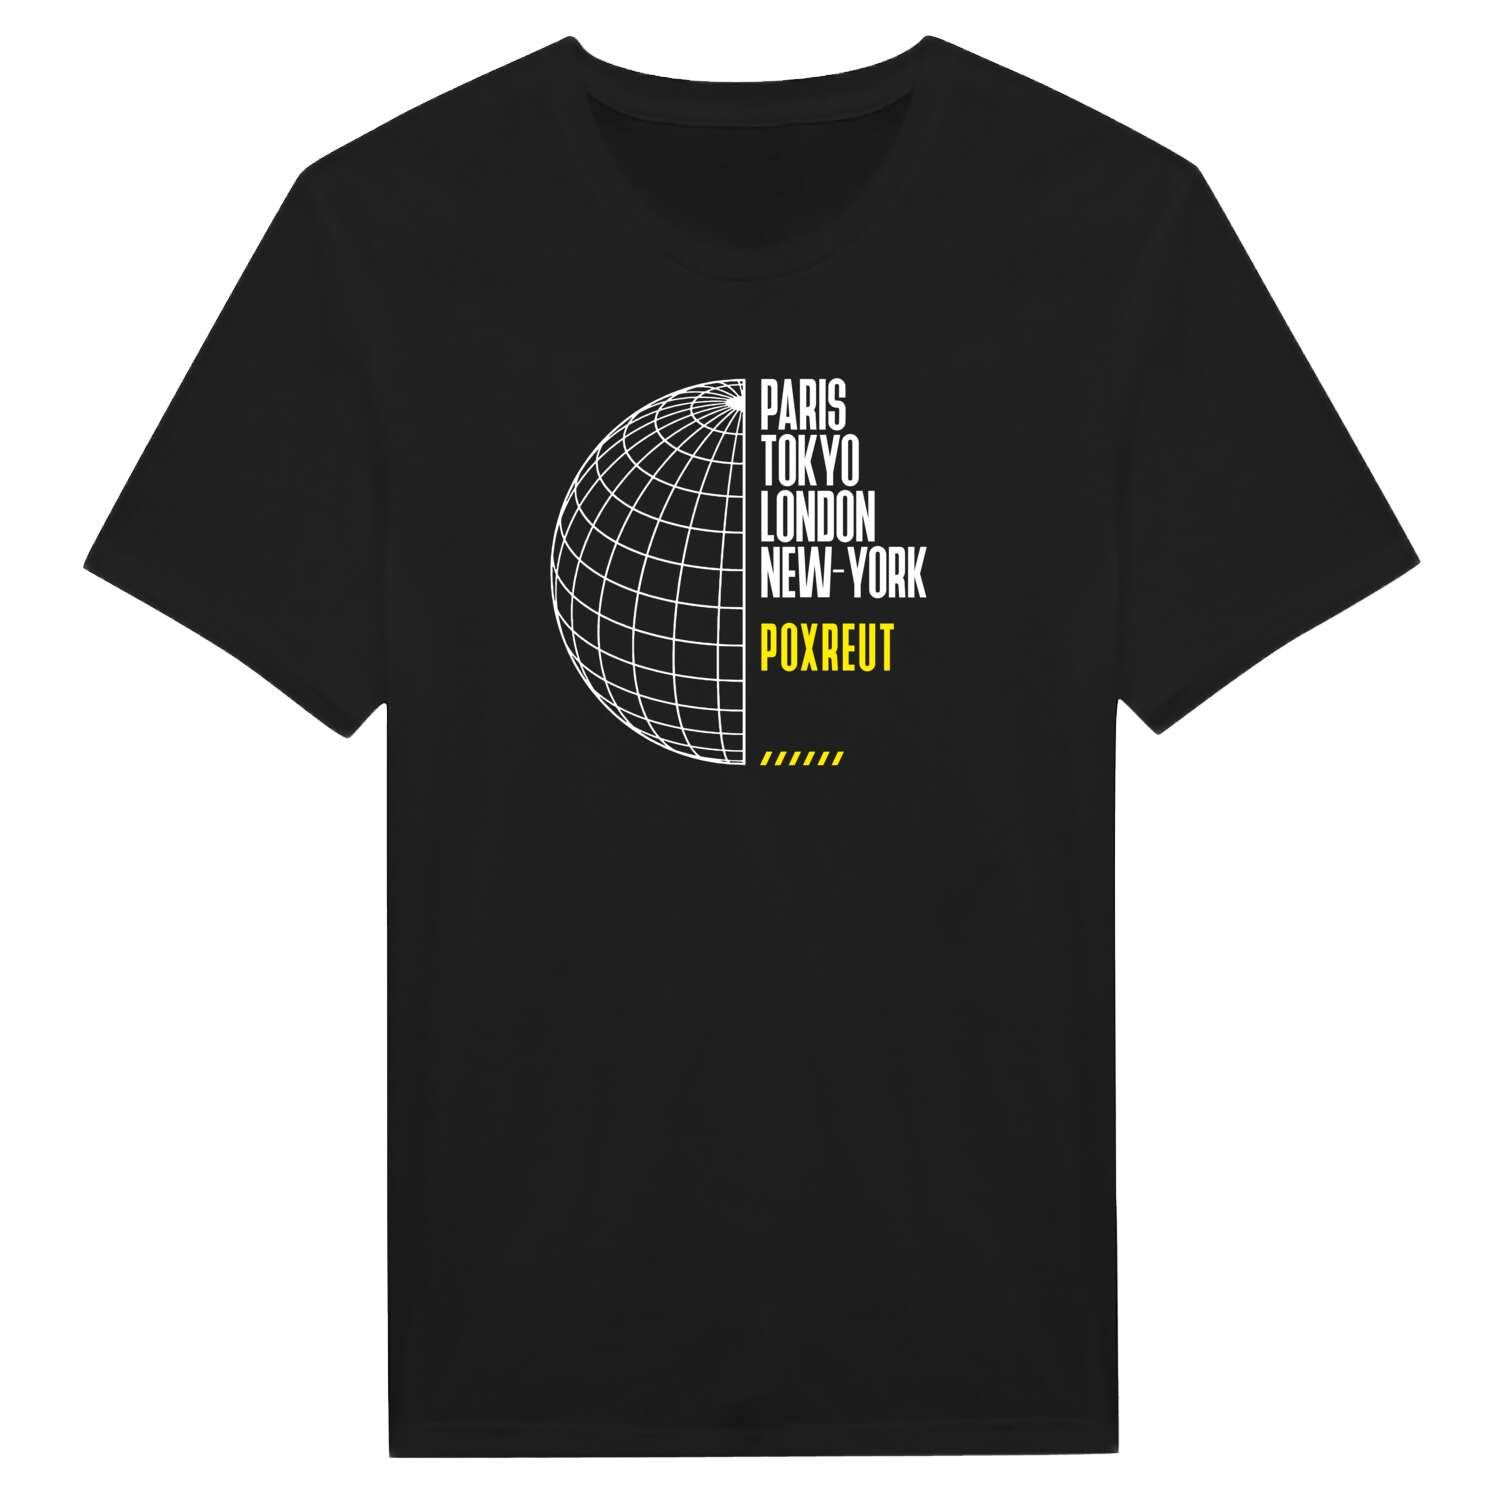 Poxreut T-Shirt »Paris Tokyo London«